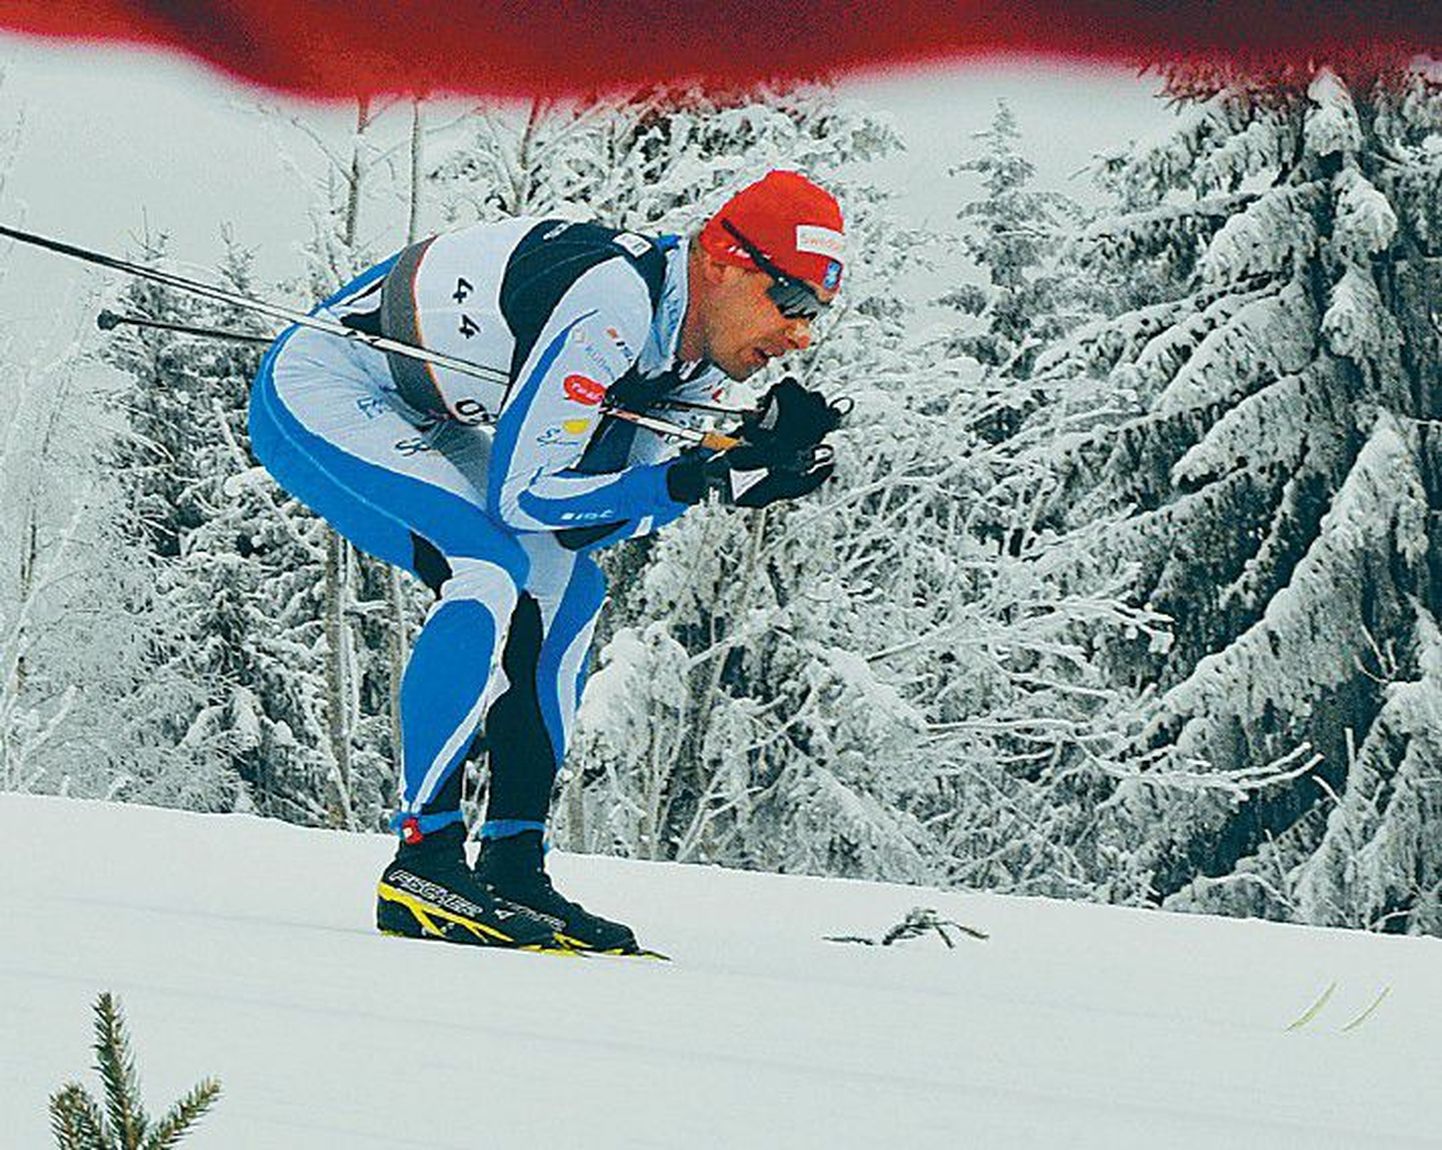 Ветеран эстонской сборной Яак Маэ четырнадцатым завершил забег на 15-километровую дистанцию на чемпионате мира.